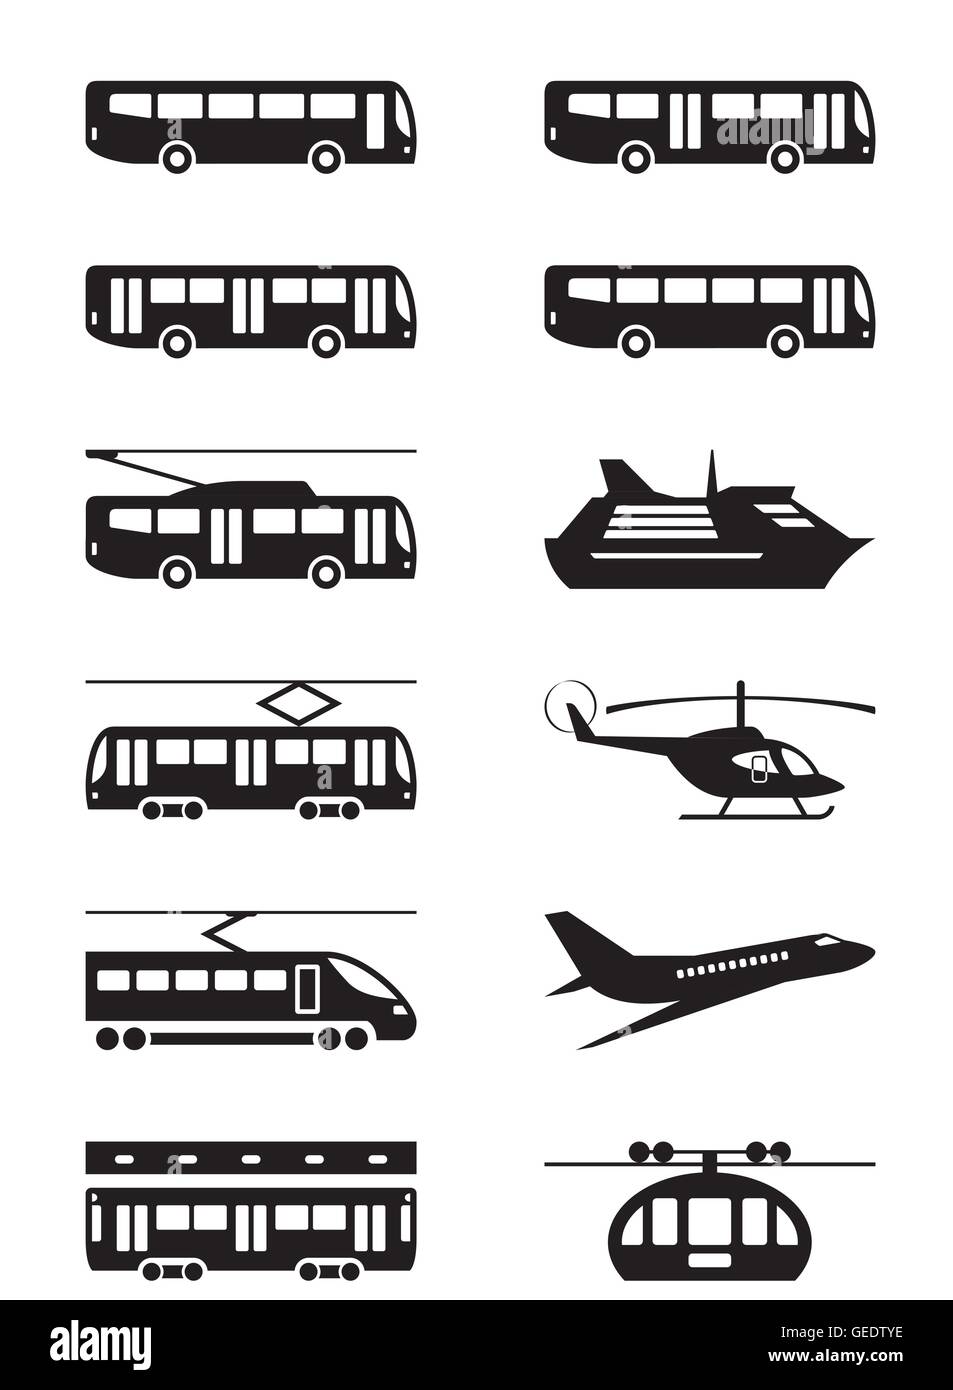 Passenger transportation vehicles - vector illustration Stock Vector